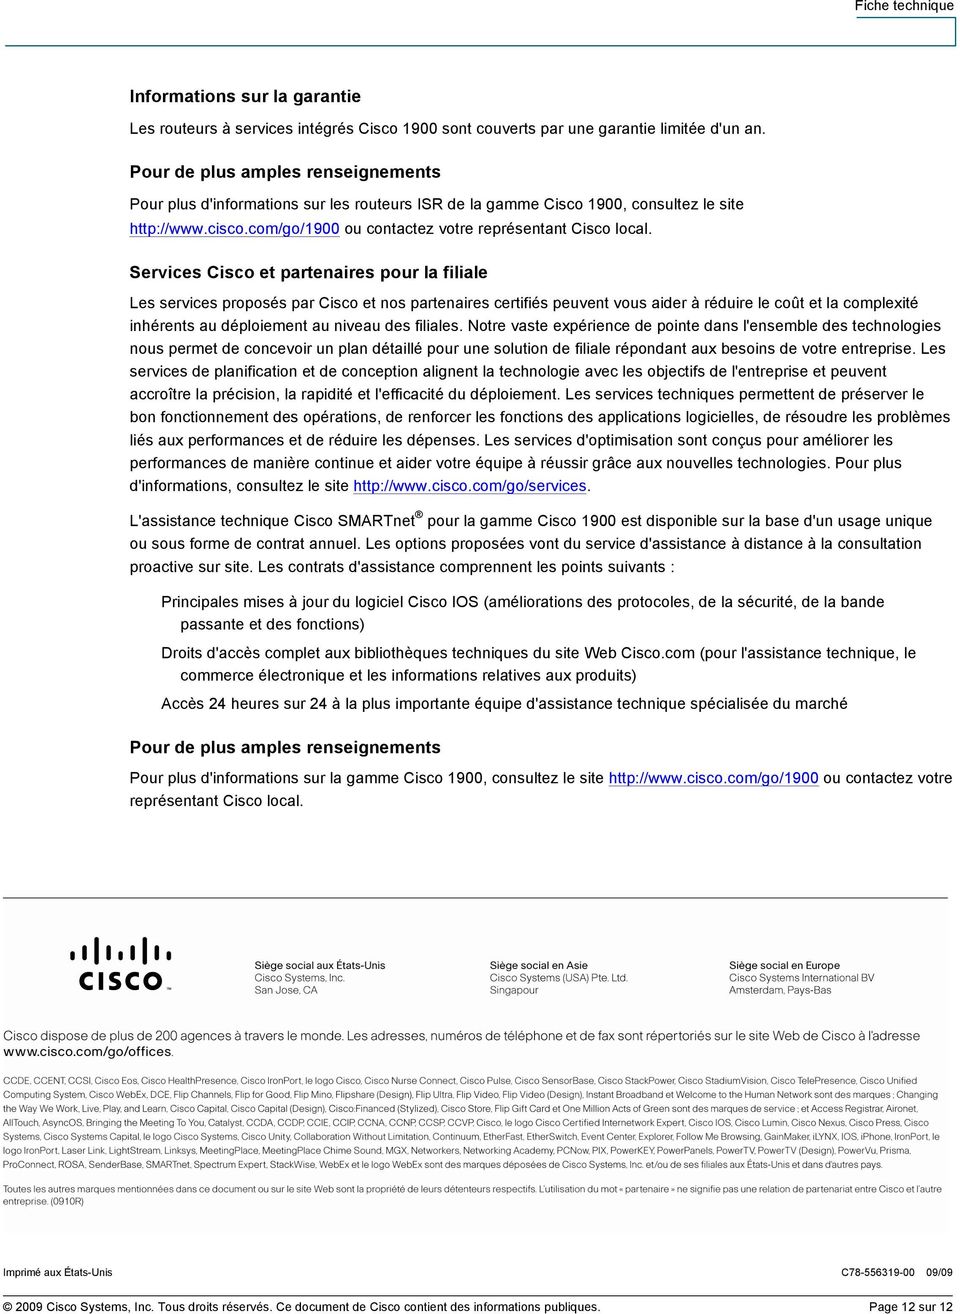 Services Cisco et partenaires pour la filiale Les services proposés par Cisco et nos partenaires certifiés peuvent vous aider à réduire le coût et la complexité inhérents au déploiement au niveau des